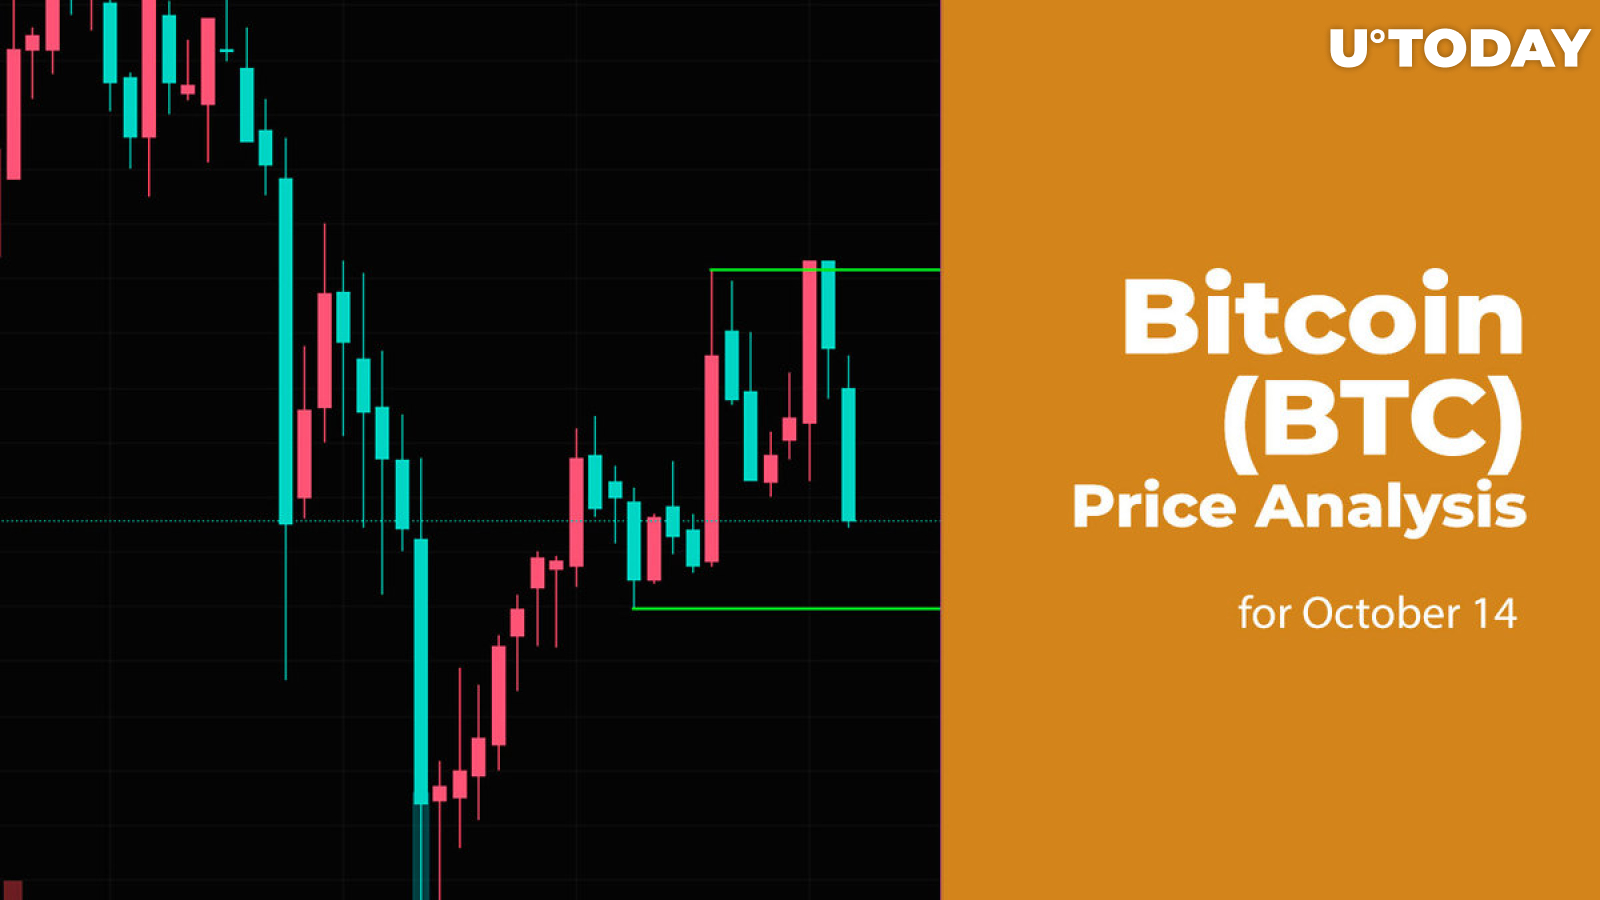 Bitcoin (BTC) Price Analysis for October 14